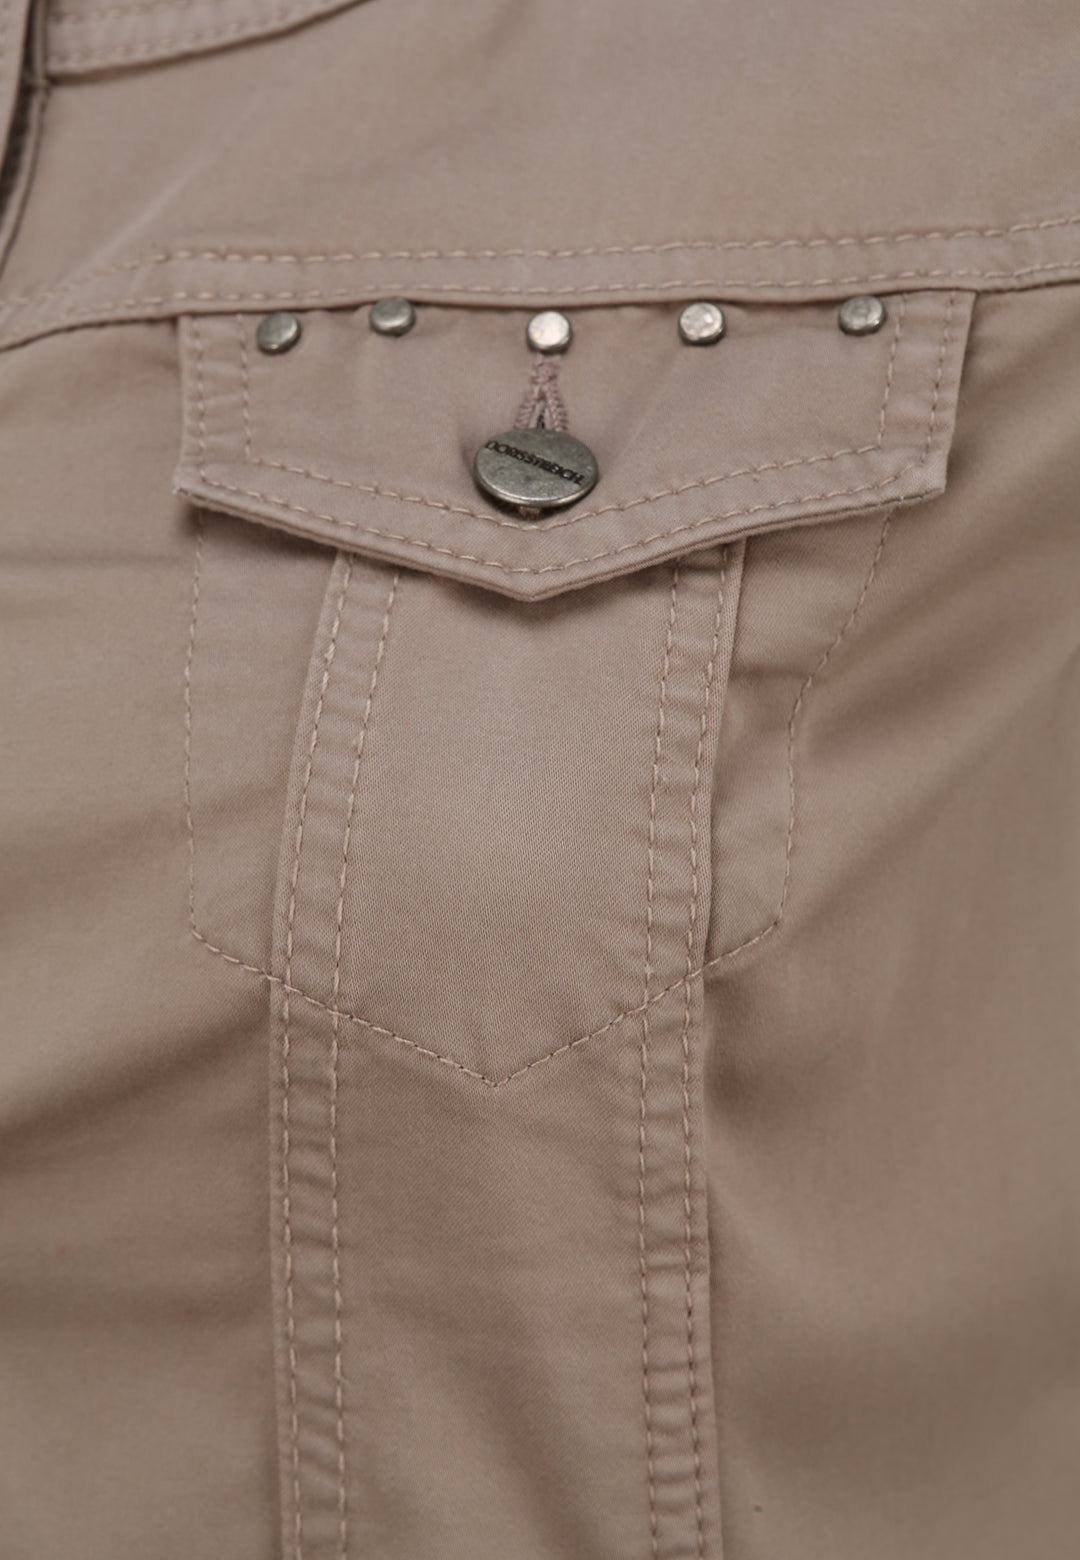 korte vest met korte mouwen - doris streich - 390199 - grote maten - dameskleding - kledingwinkel - herent - leuven